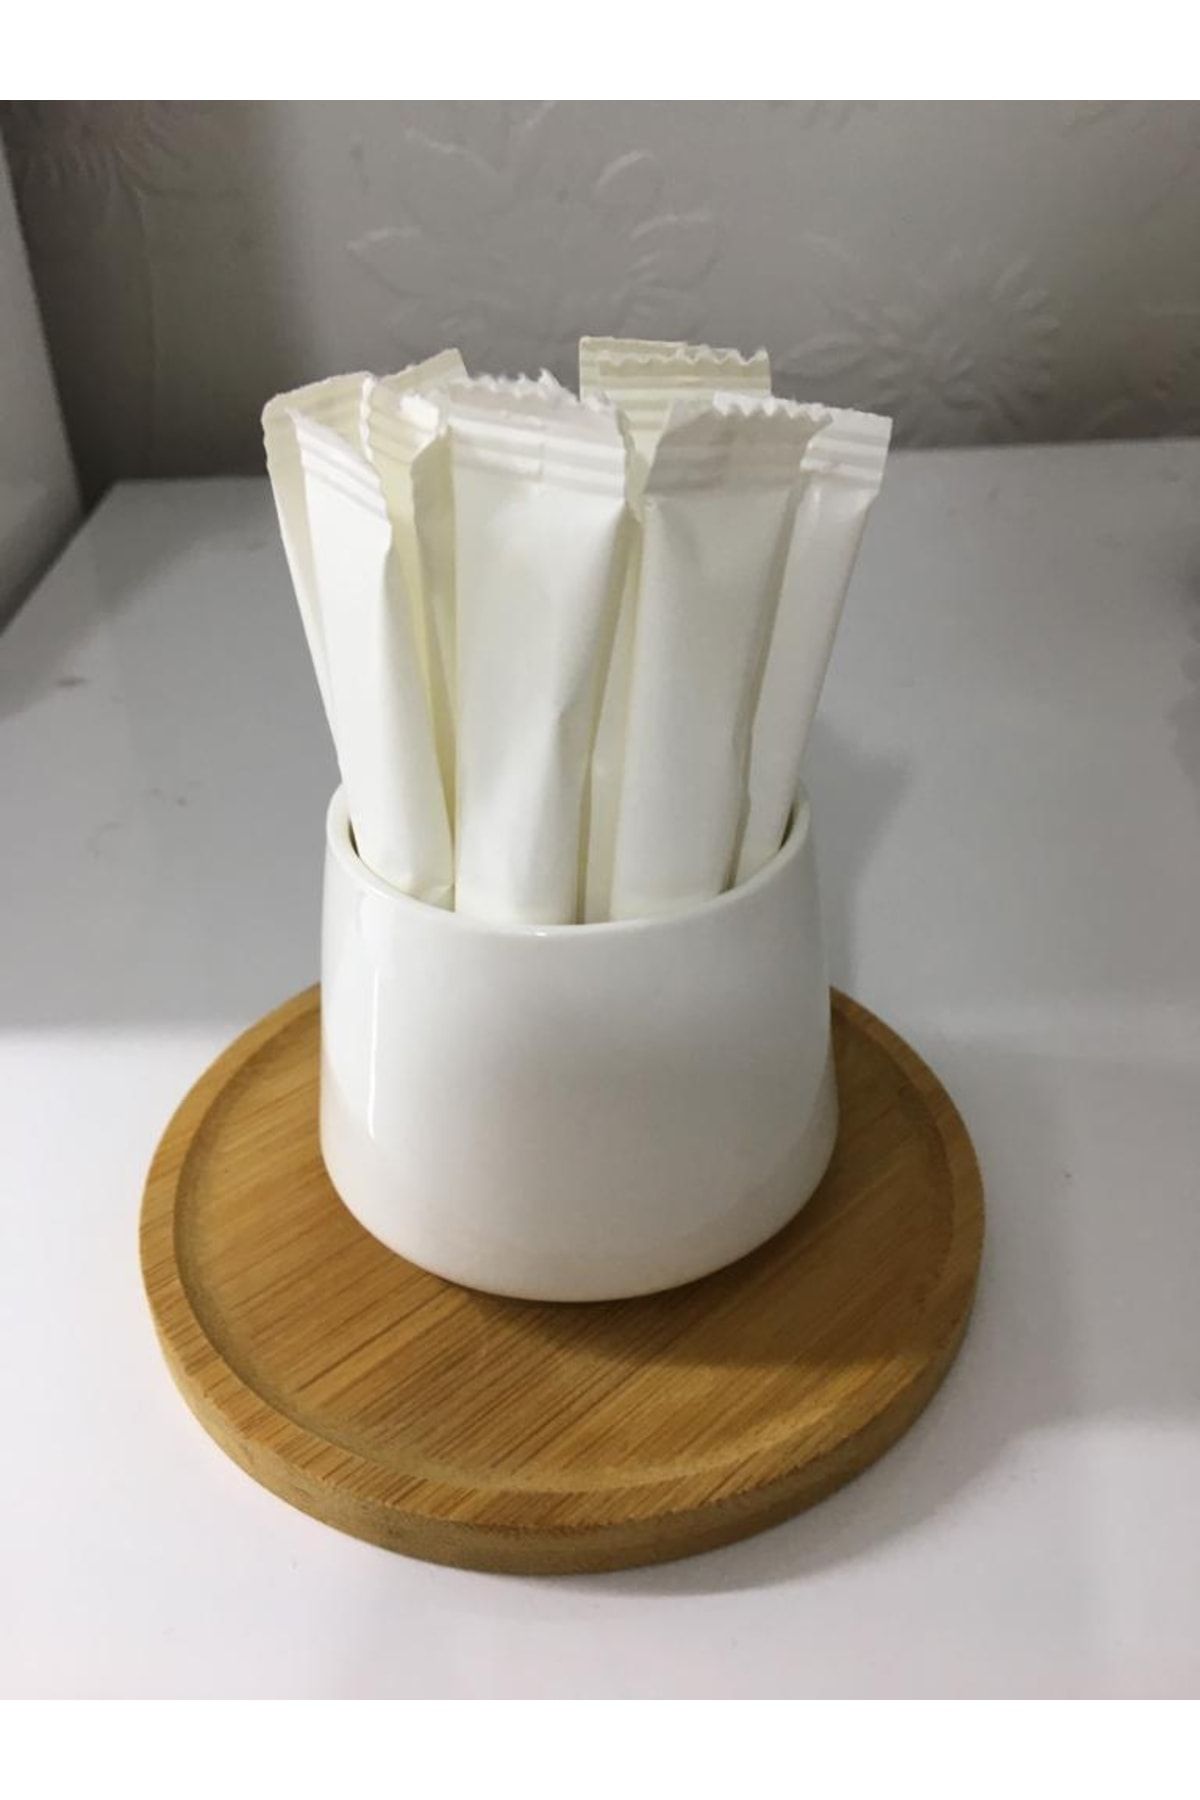 Merpak Ambalaj Stick Şeker Beyaz Baskısız Stick Toz Şeker 3 Gr X 100'lü